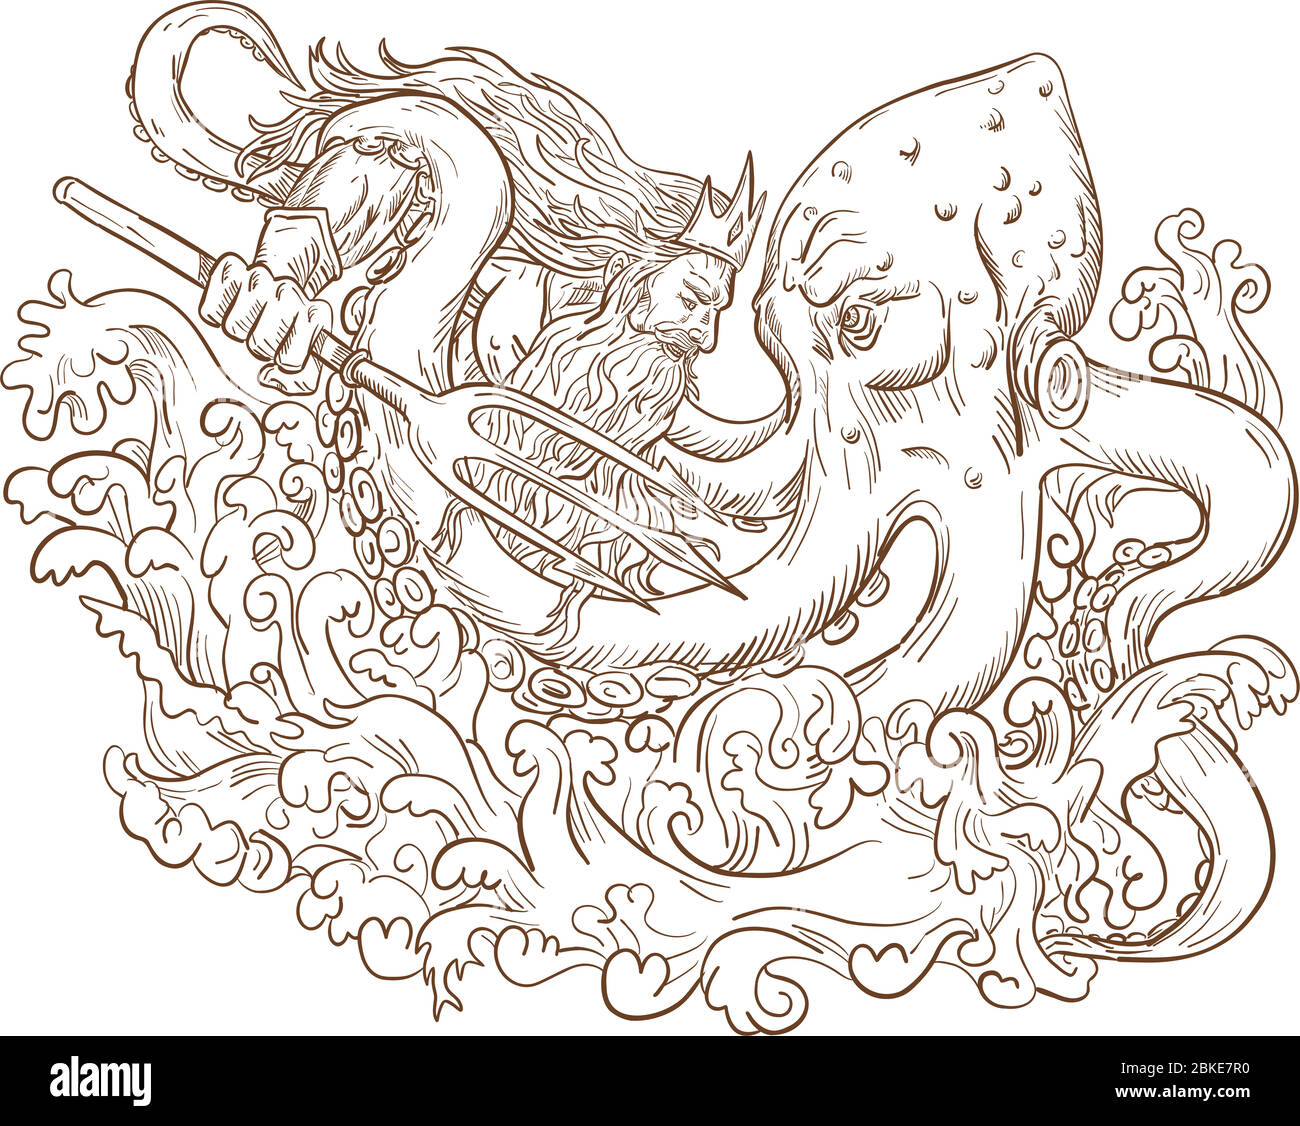 Dessin d'esquisse de style illustration du dieu romain Neptune ou Poseidon, le dieu grec de la mer, avec trident et couronne luttant contre un Kraken, géant Octopus sur moi Illustration de Vecteur